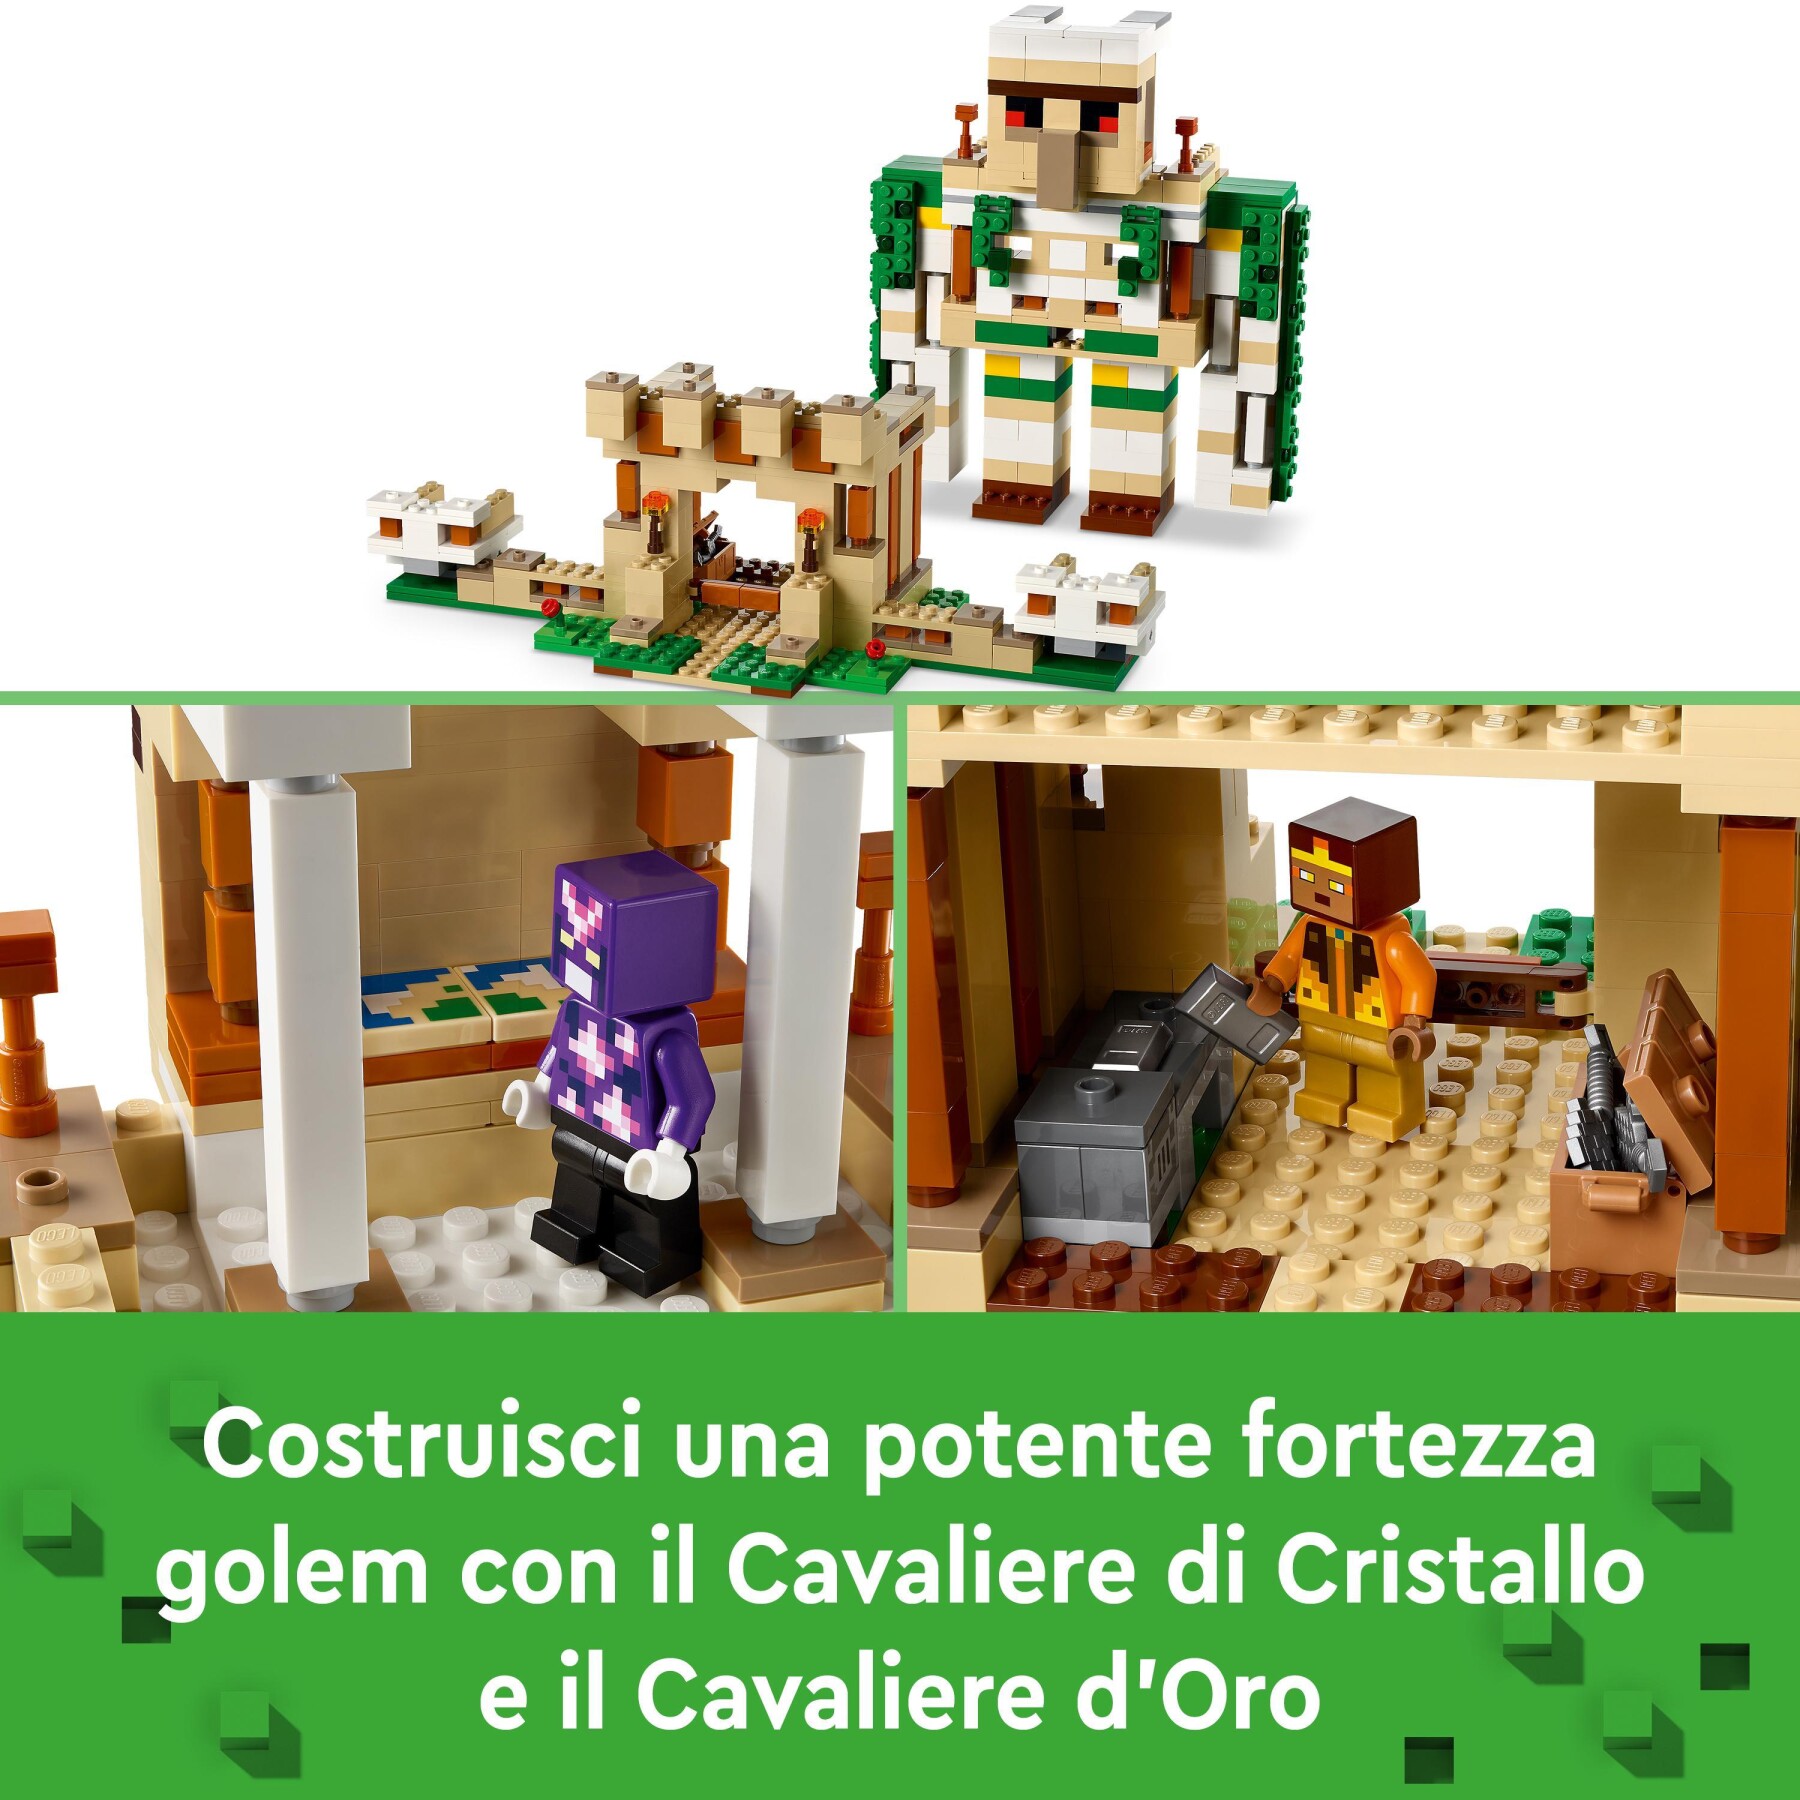 Lego 21250 minecraft la fortezza del golem di ferro, castello giocattolo costruibile che si trasforma in action figure, con 7 personaggi - MINECRAFT